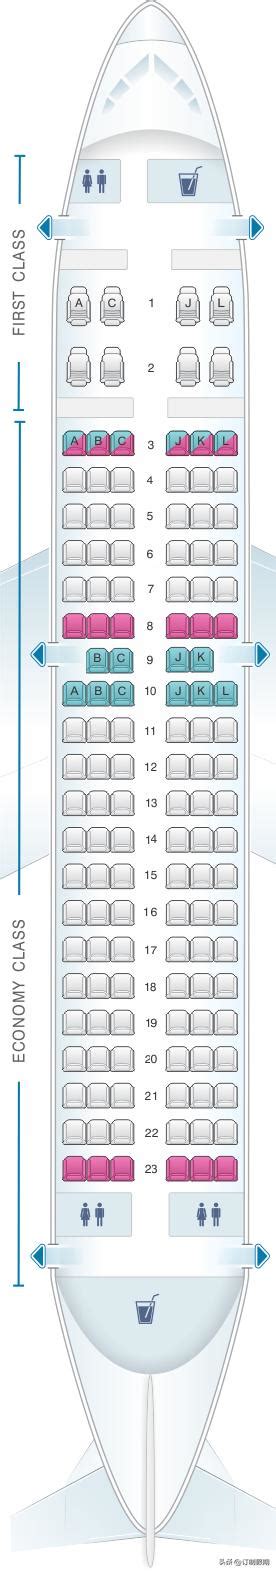 飞机的经济舱坐哪最舒服？ - 知乎